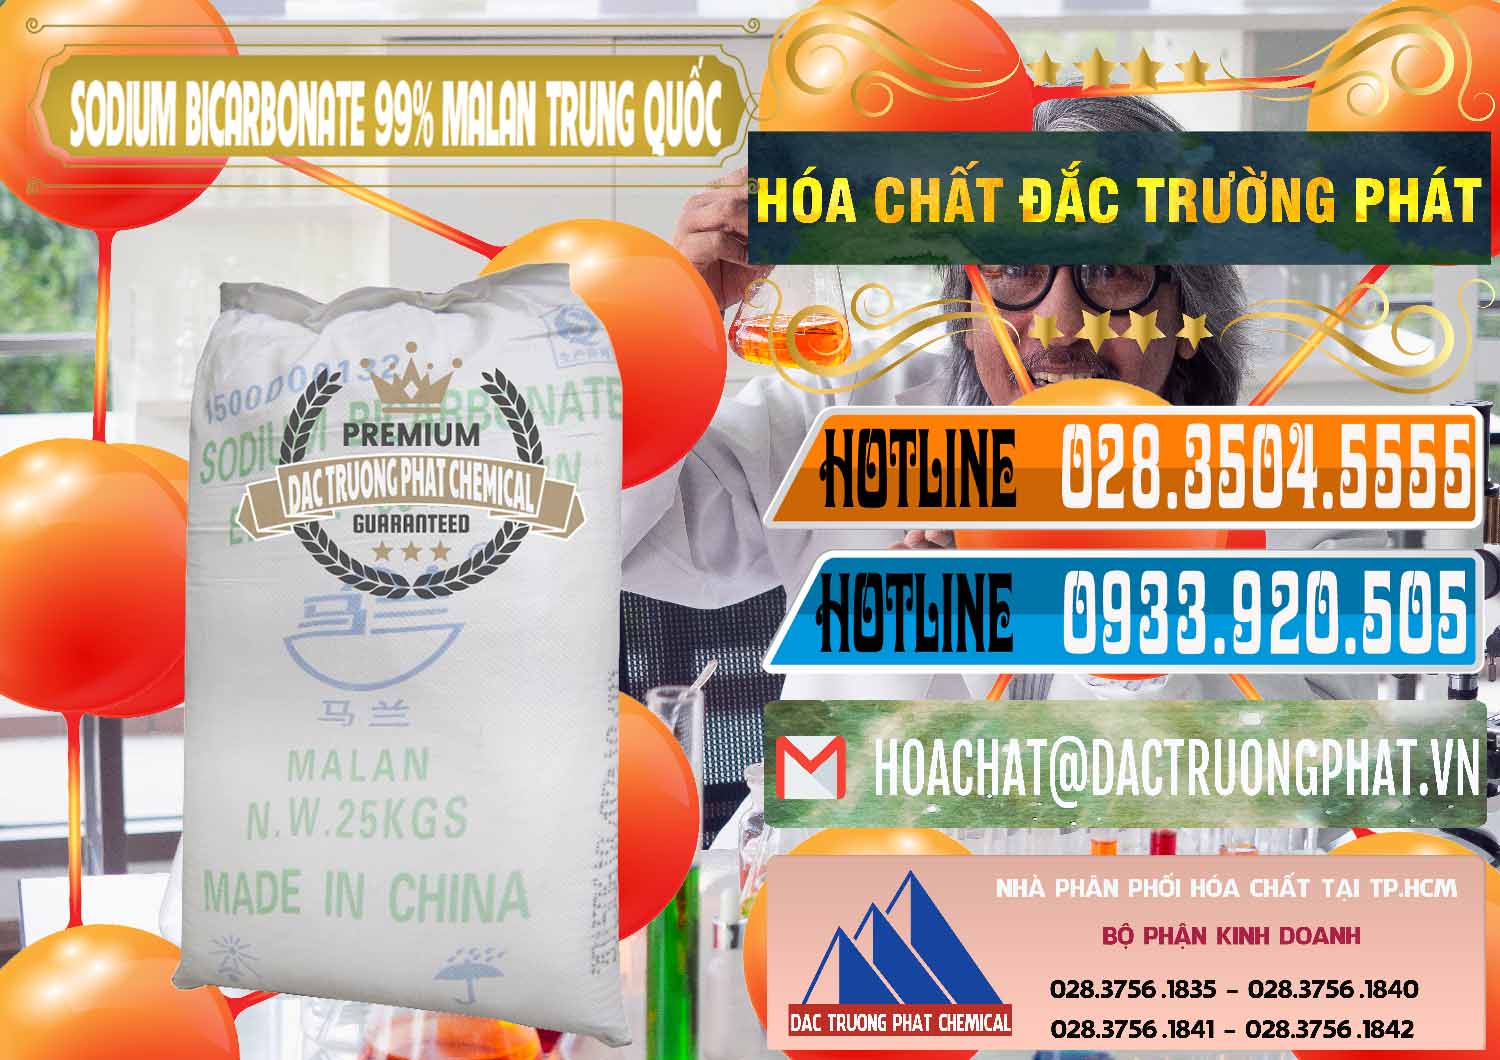 Nơi nhập khẩu và bán Sodium Bicarbonate – Bicar NaHCO3 Malan Trung Quốc China - 0218 - Nơi phân phối & cung cấp hóa chất tại TP.HCM - stmp.net